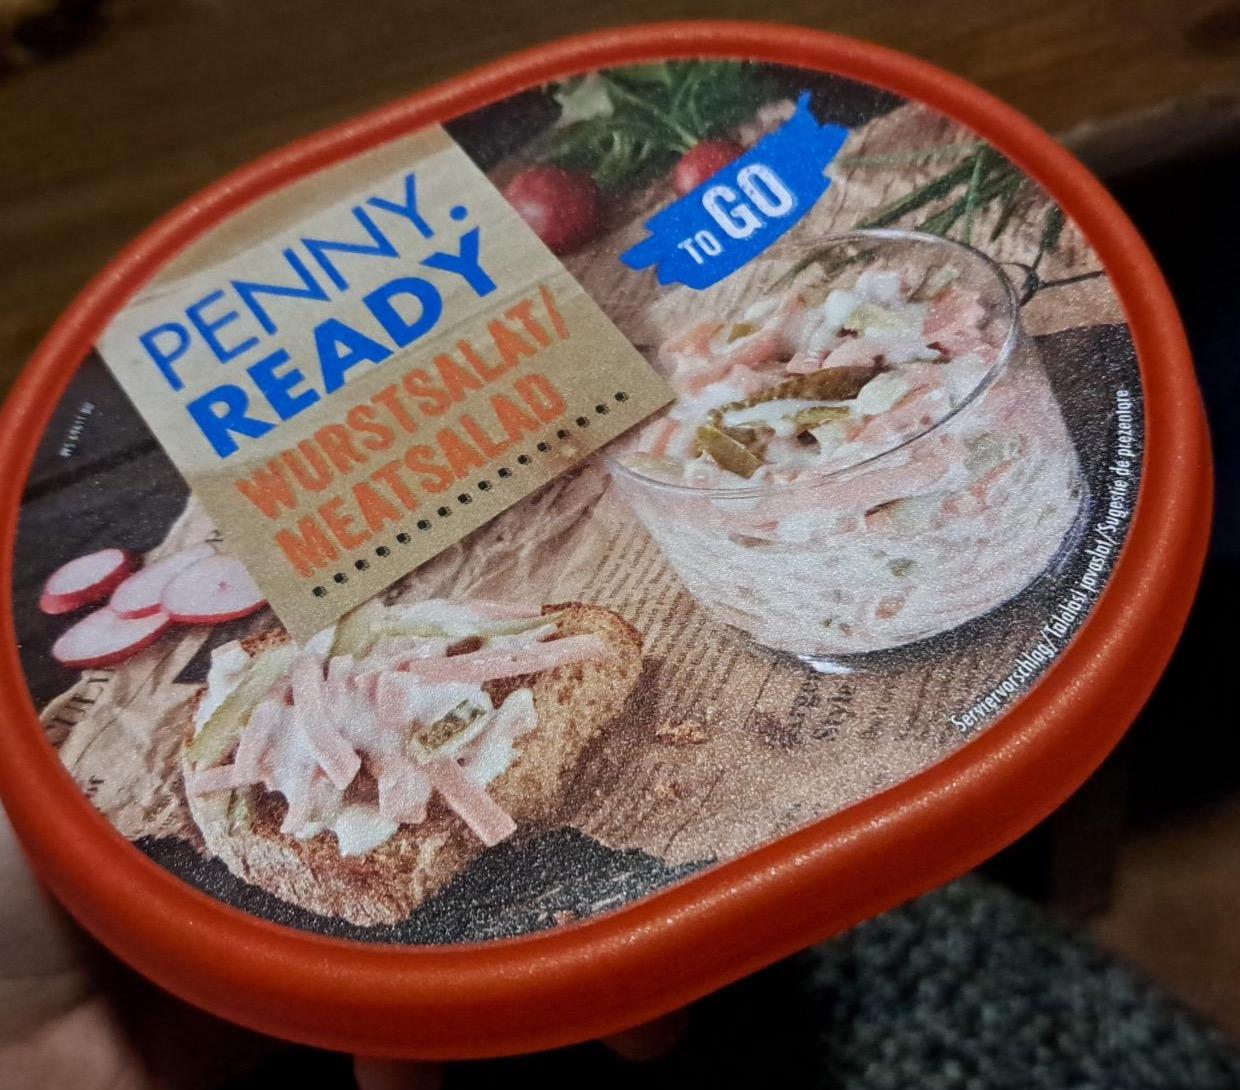 Képek - Wurstsalat / meatsalad Penny ready to go